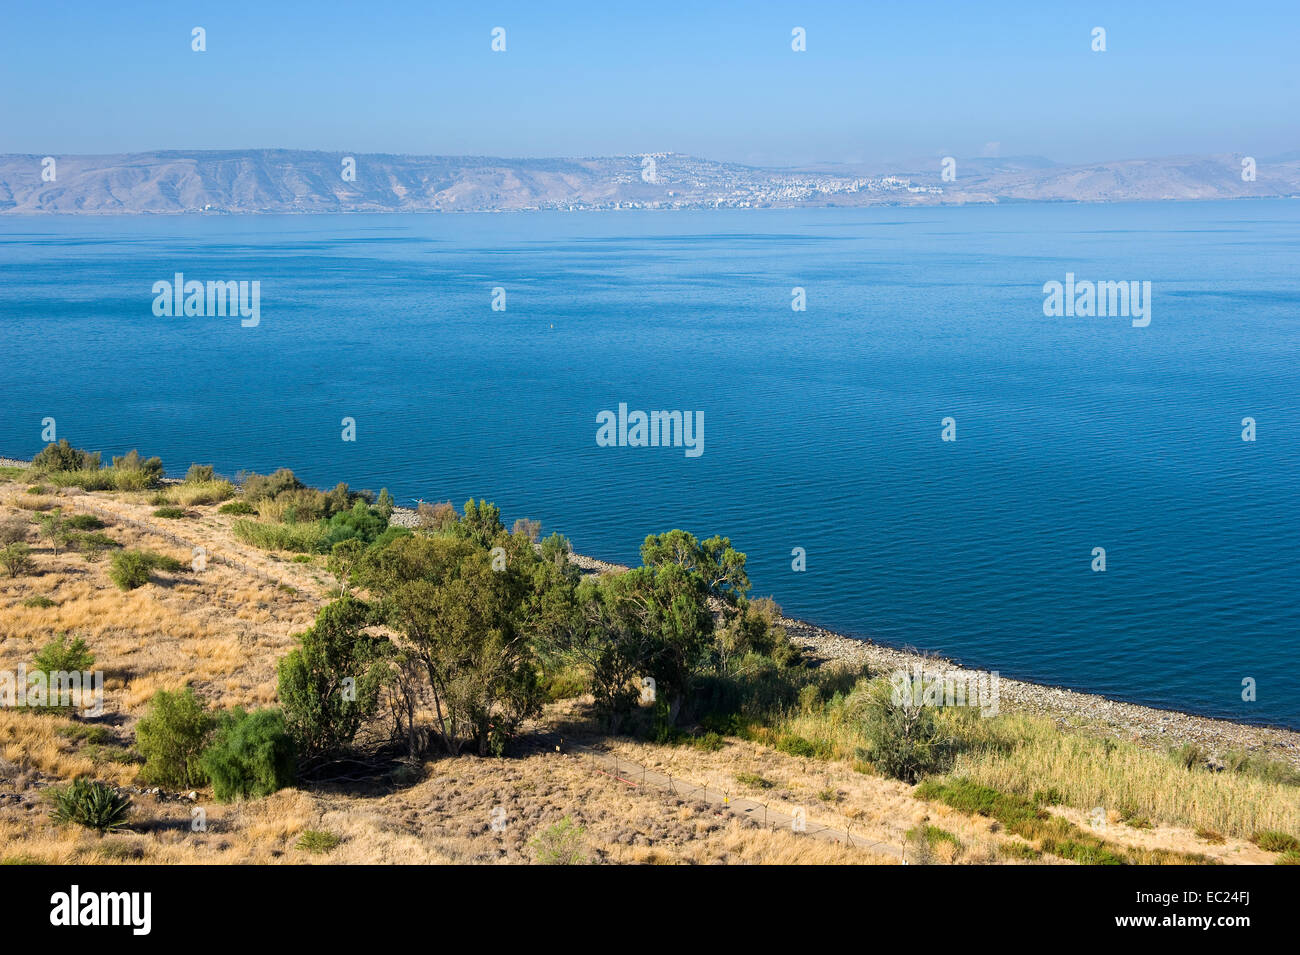 La mer de Galilée en Israël comme vu à partir de la côte est, la ville de l'autre côté est Tiberias Banque D'Images